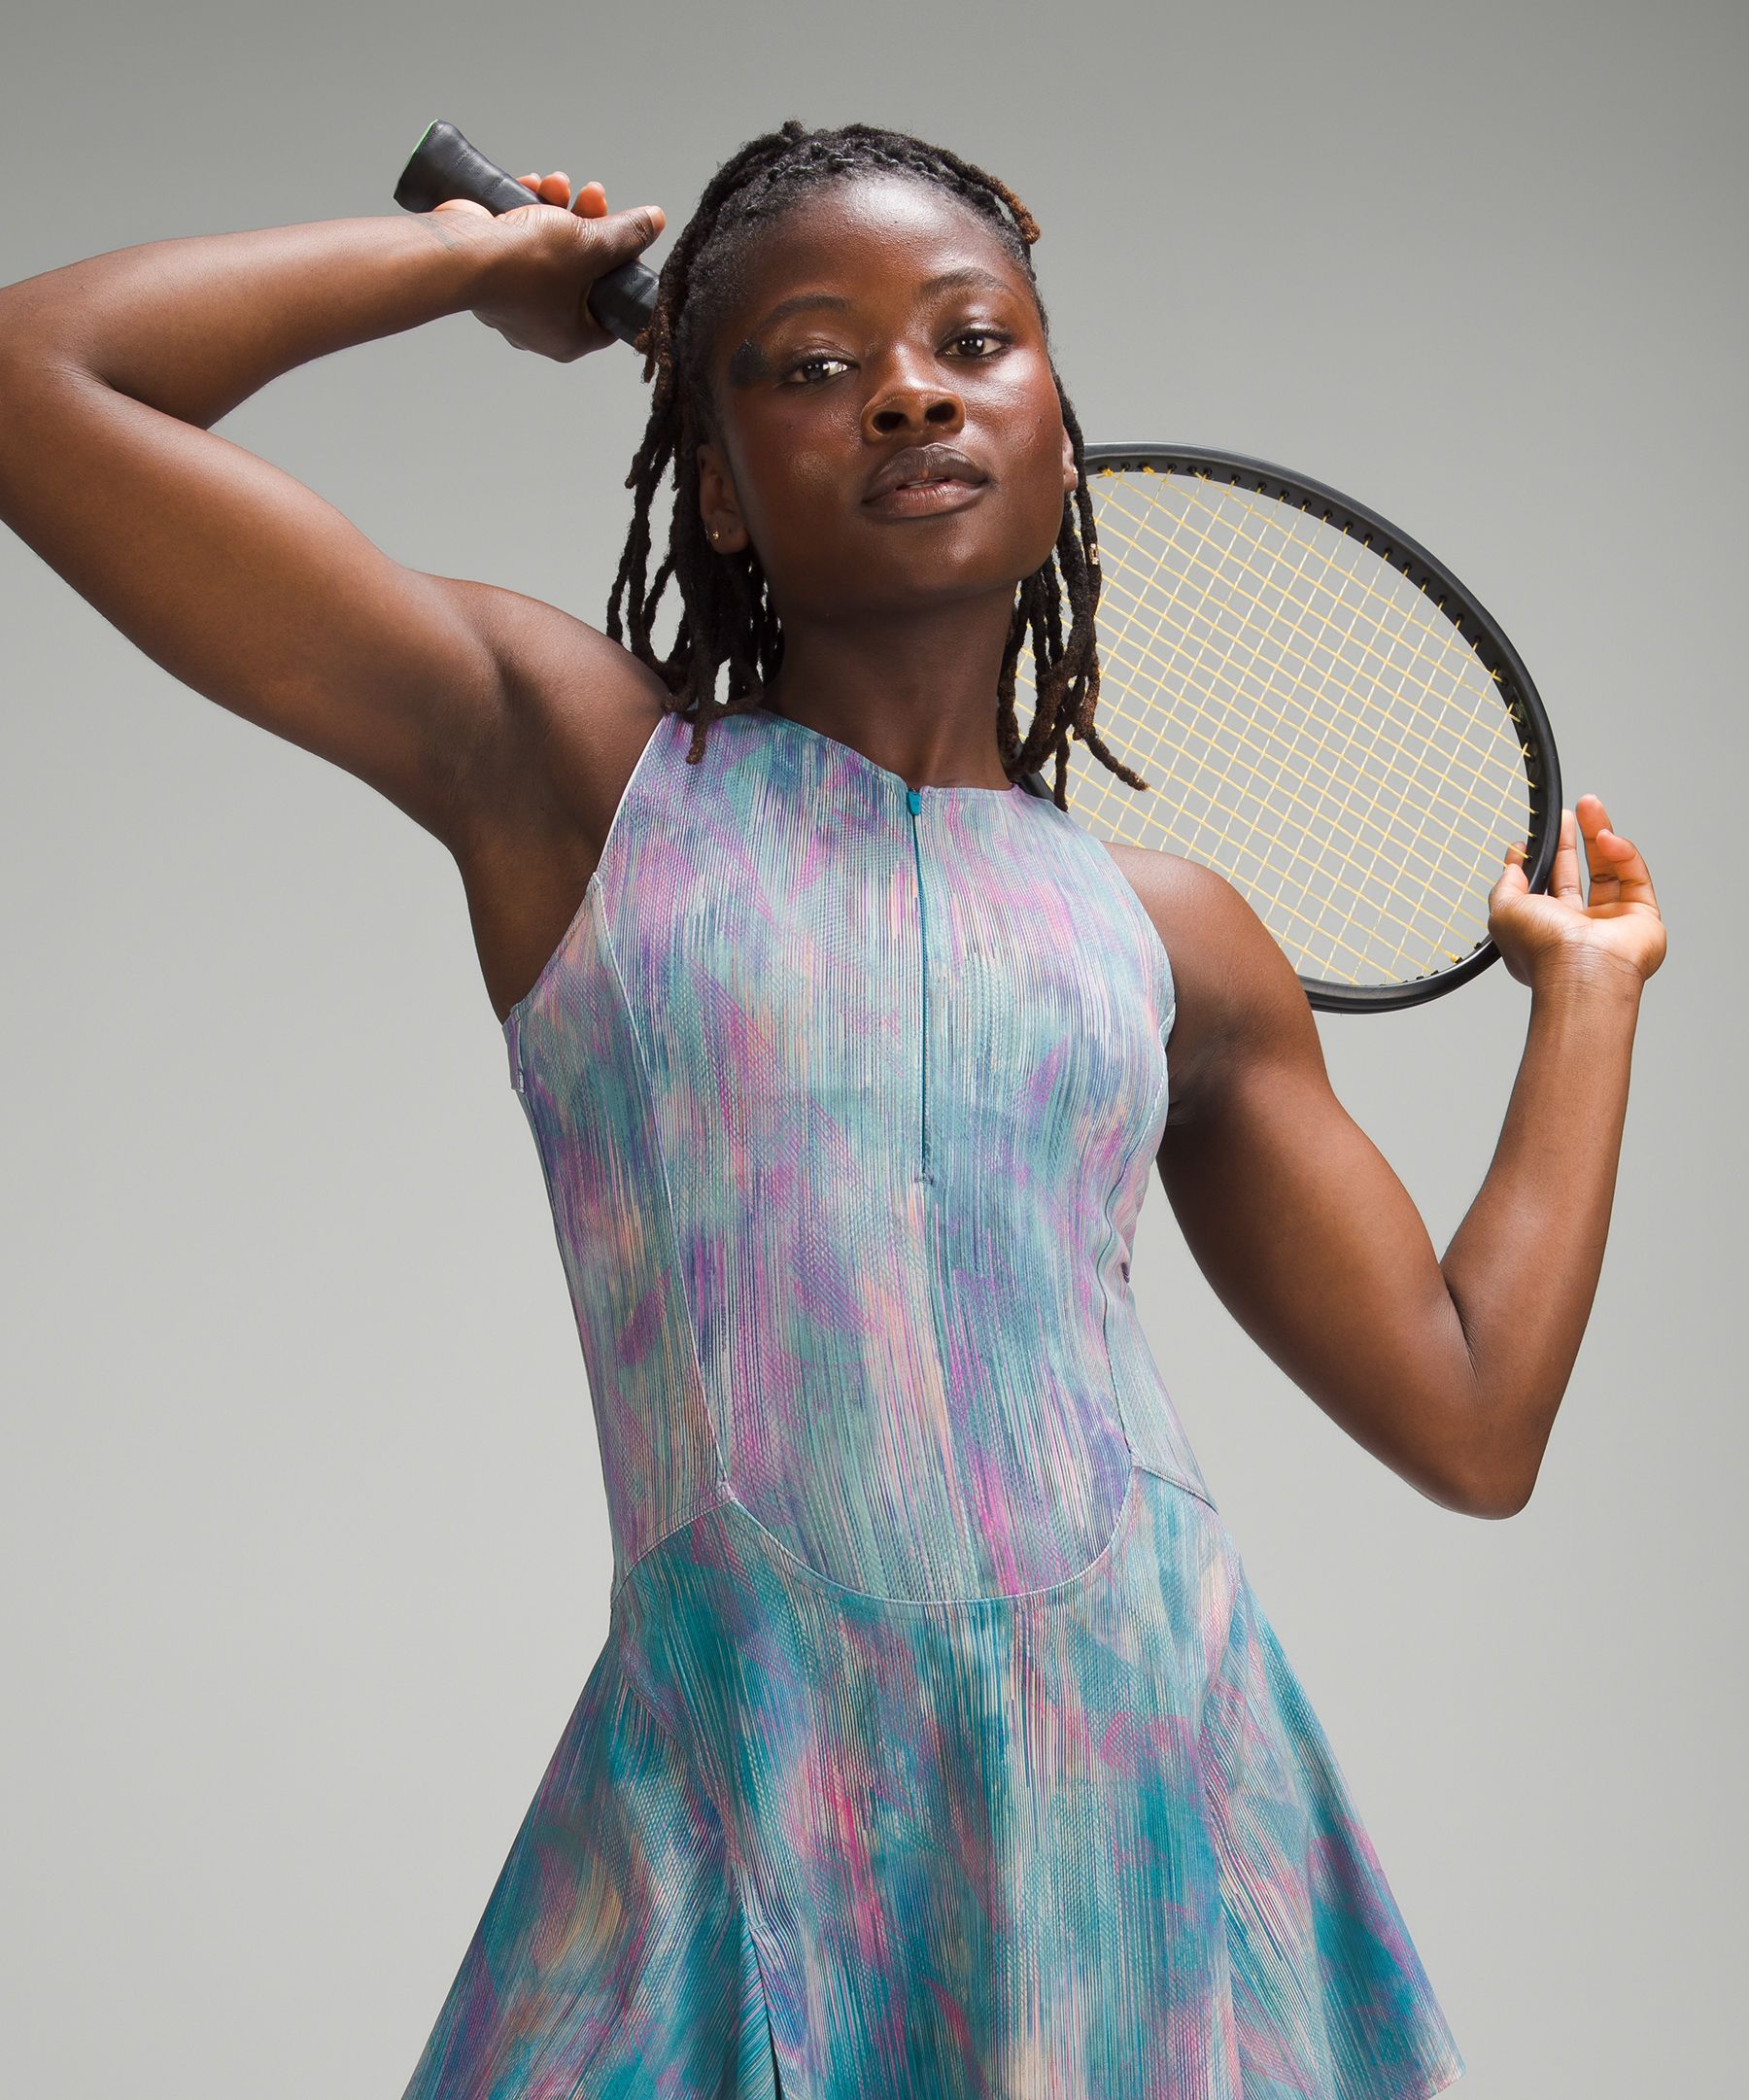 Everlux Short-Lined Tennis Tank Top Dress 6